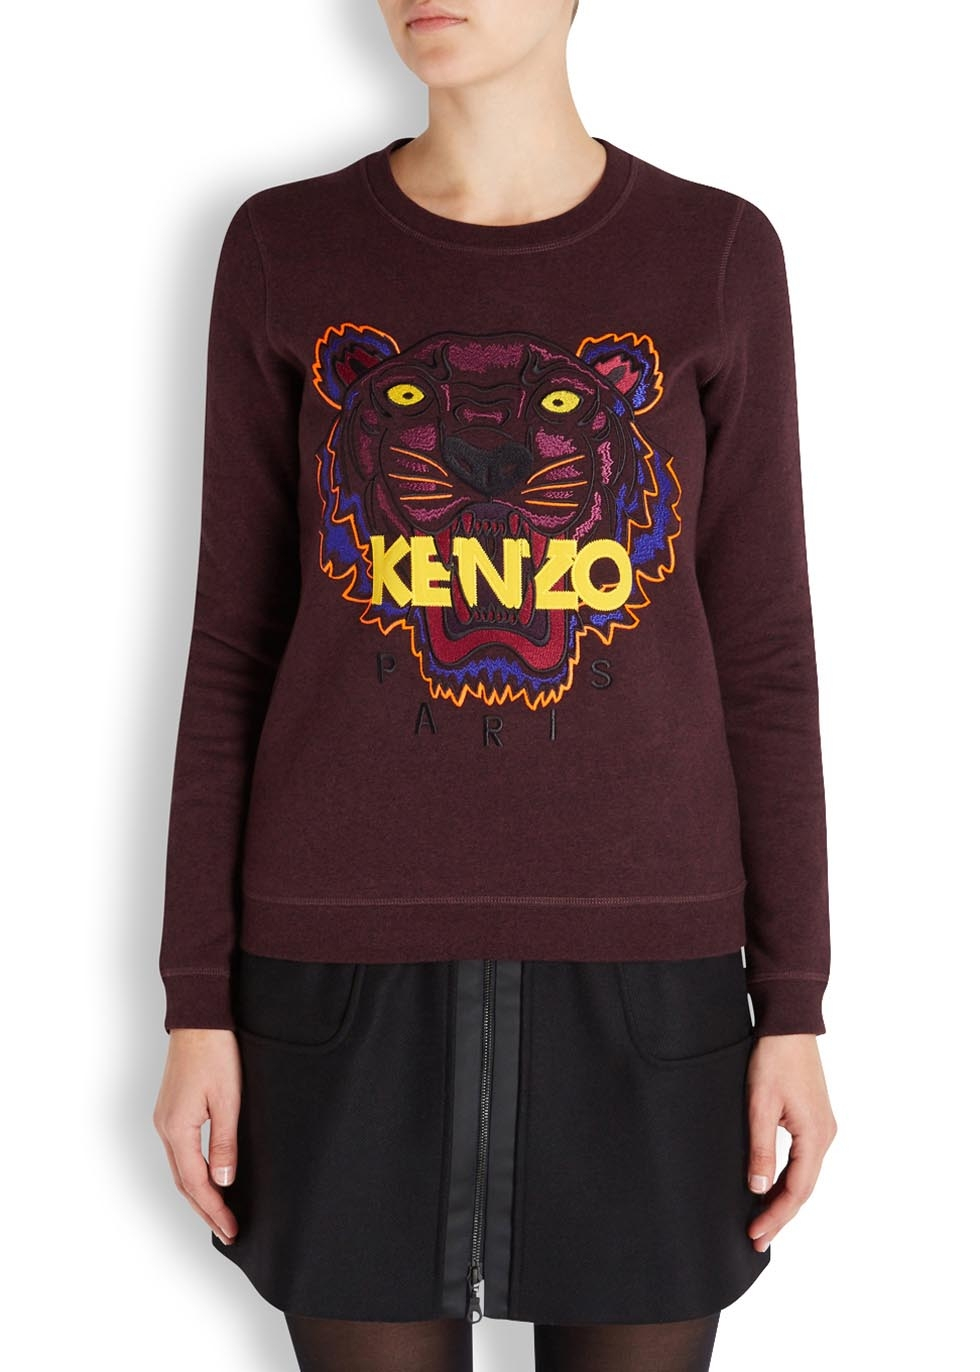 kenzo burgundy jumper